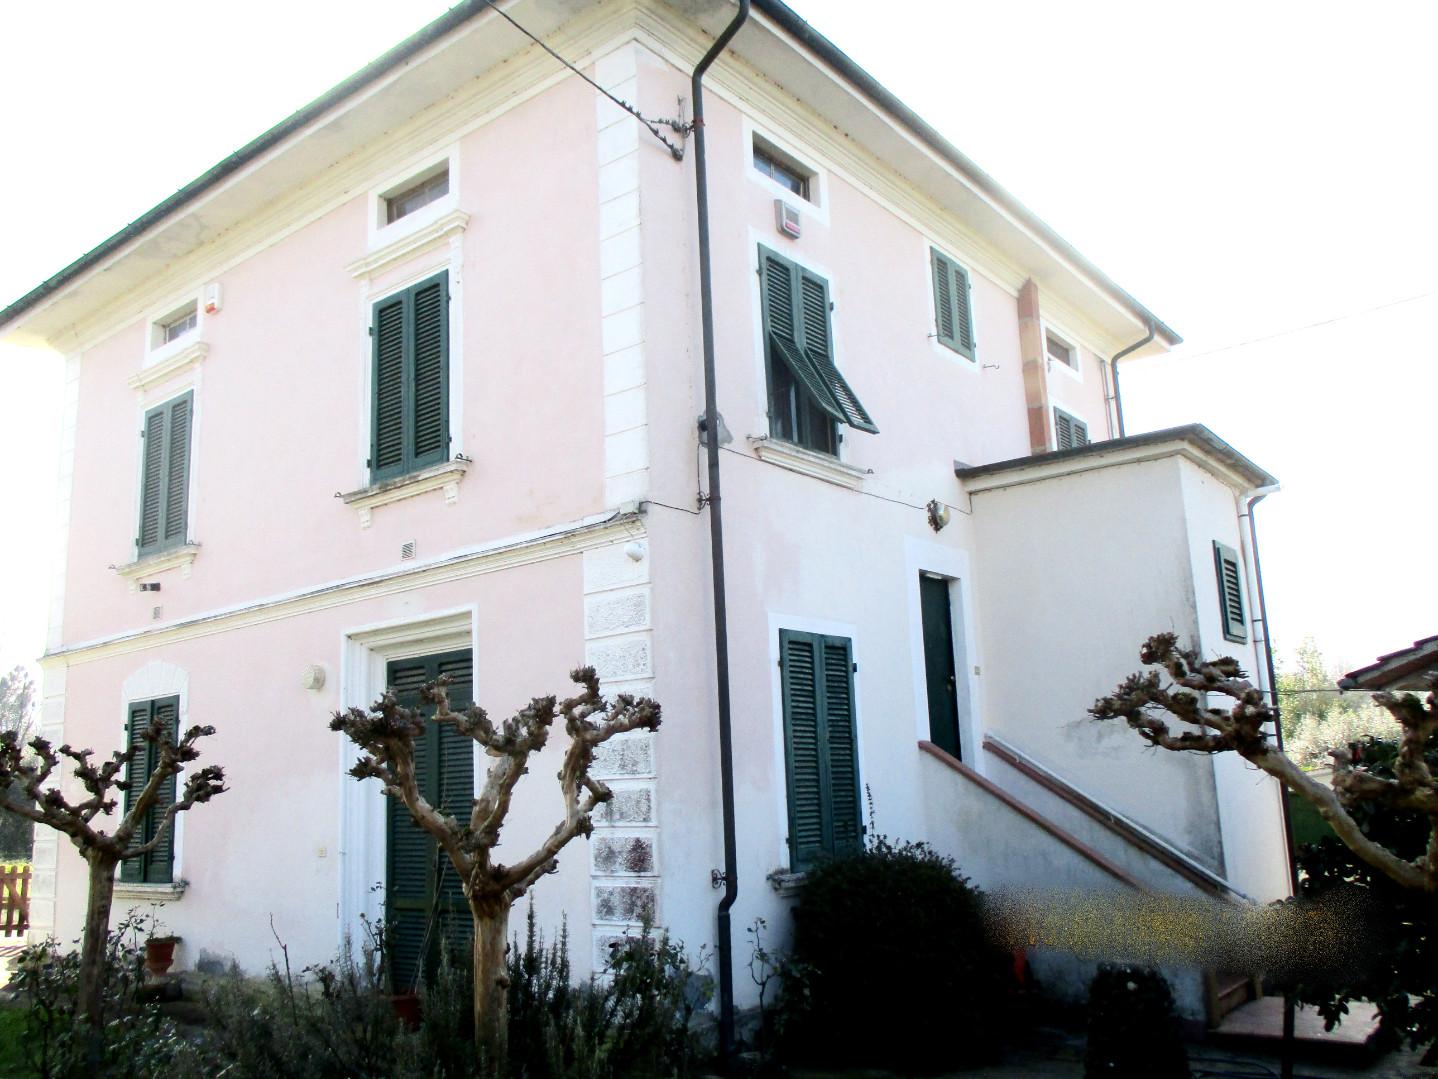 Villa con giardino, Castelfranco di Sotto orentano